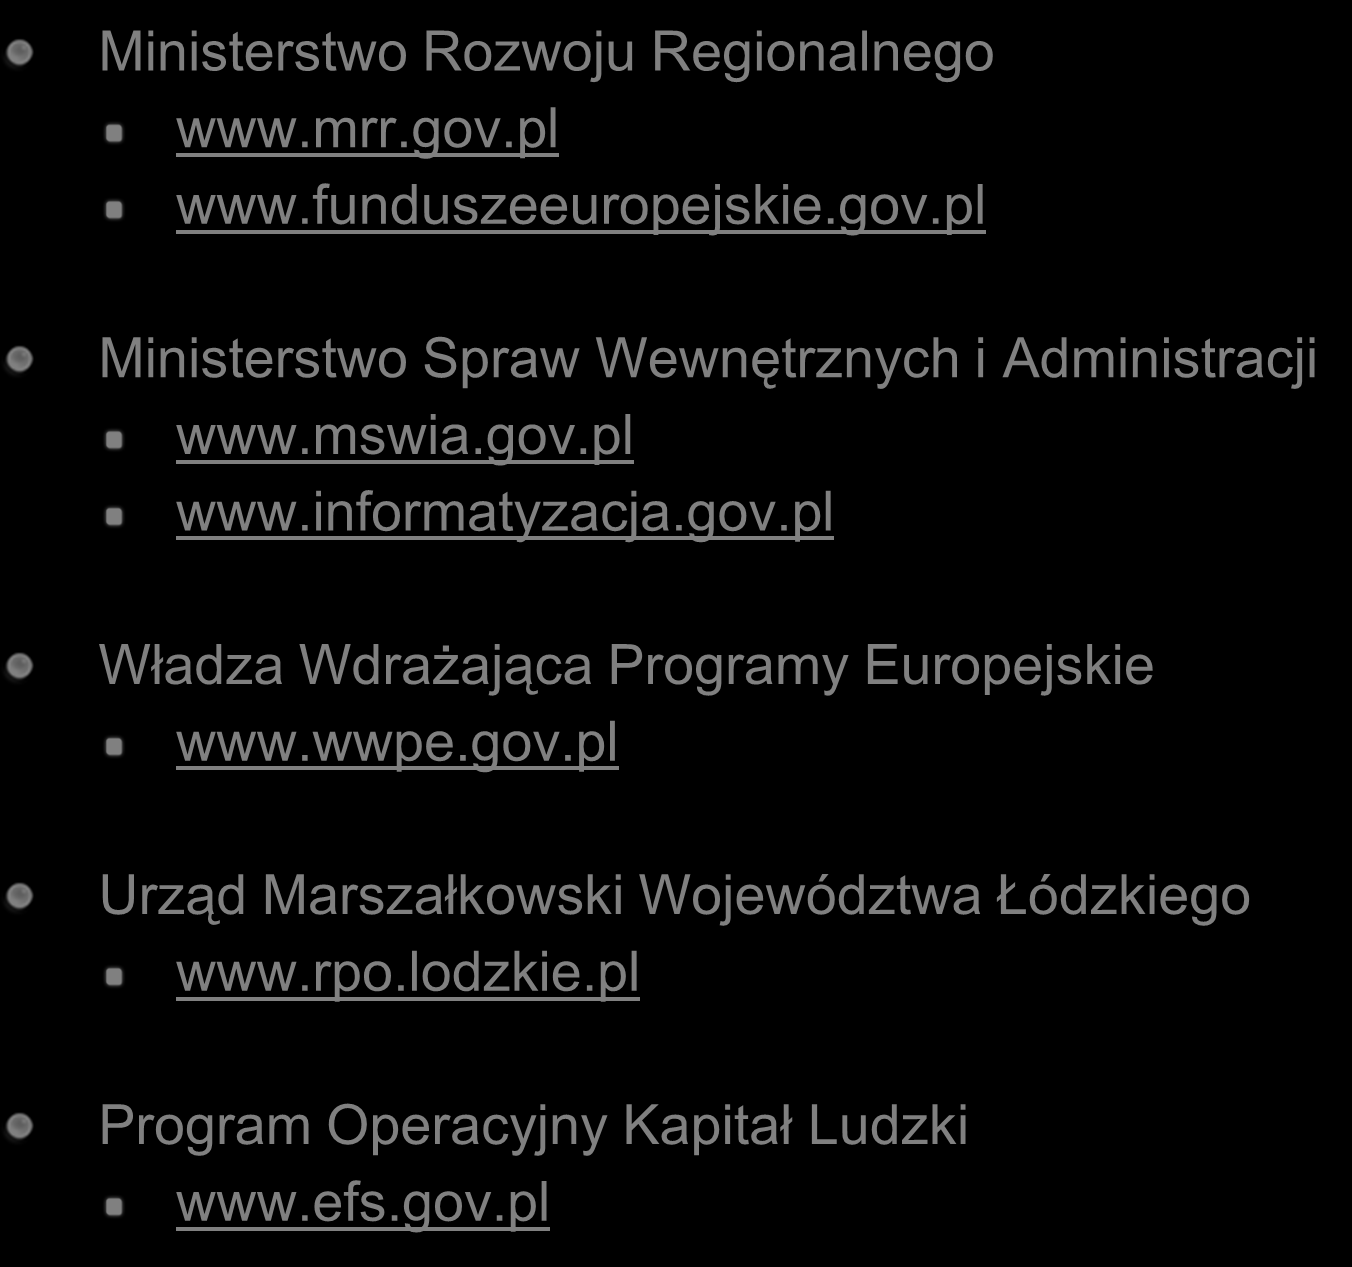 Ważne linki Ministerstwo Rozwoju Regionalnego www.mrr.gov.pl www.funduszeeuropejskie.gov.pl Ministerstwo Spraw Wewnętrznych i Administracji www.mswia.gov.pl www.informatyzacja.